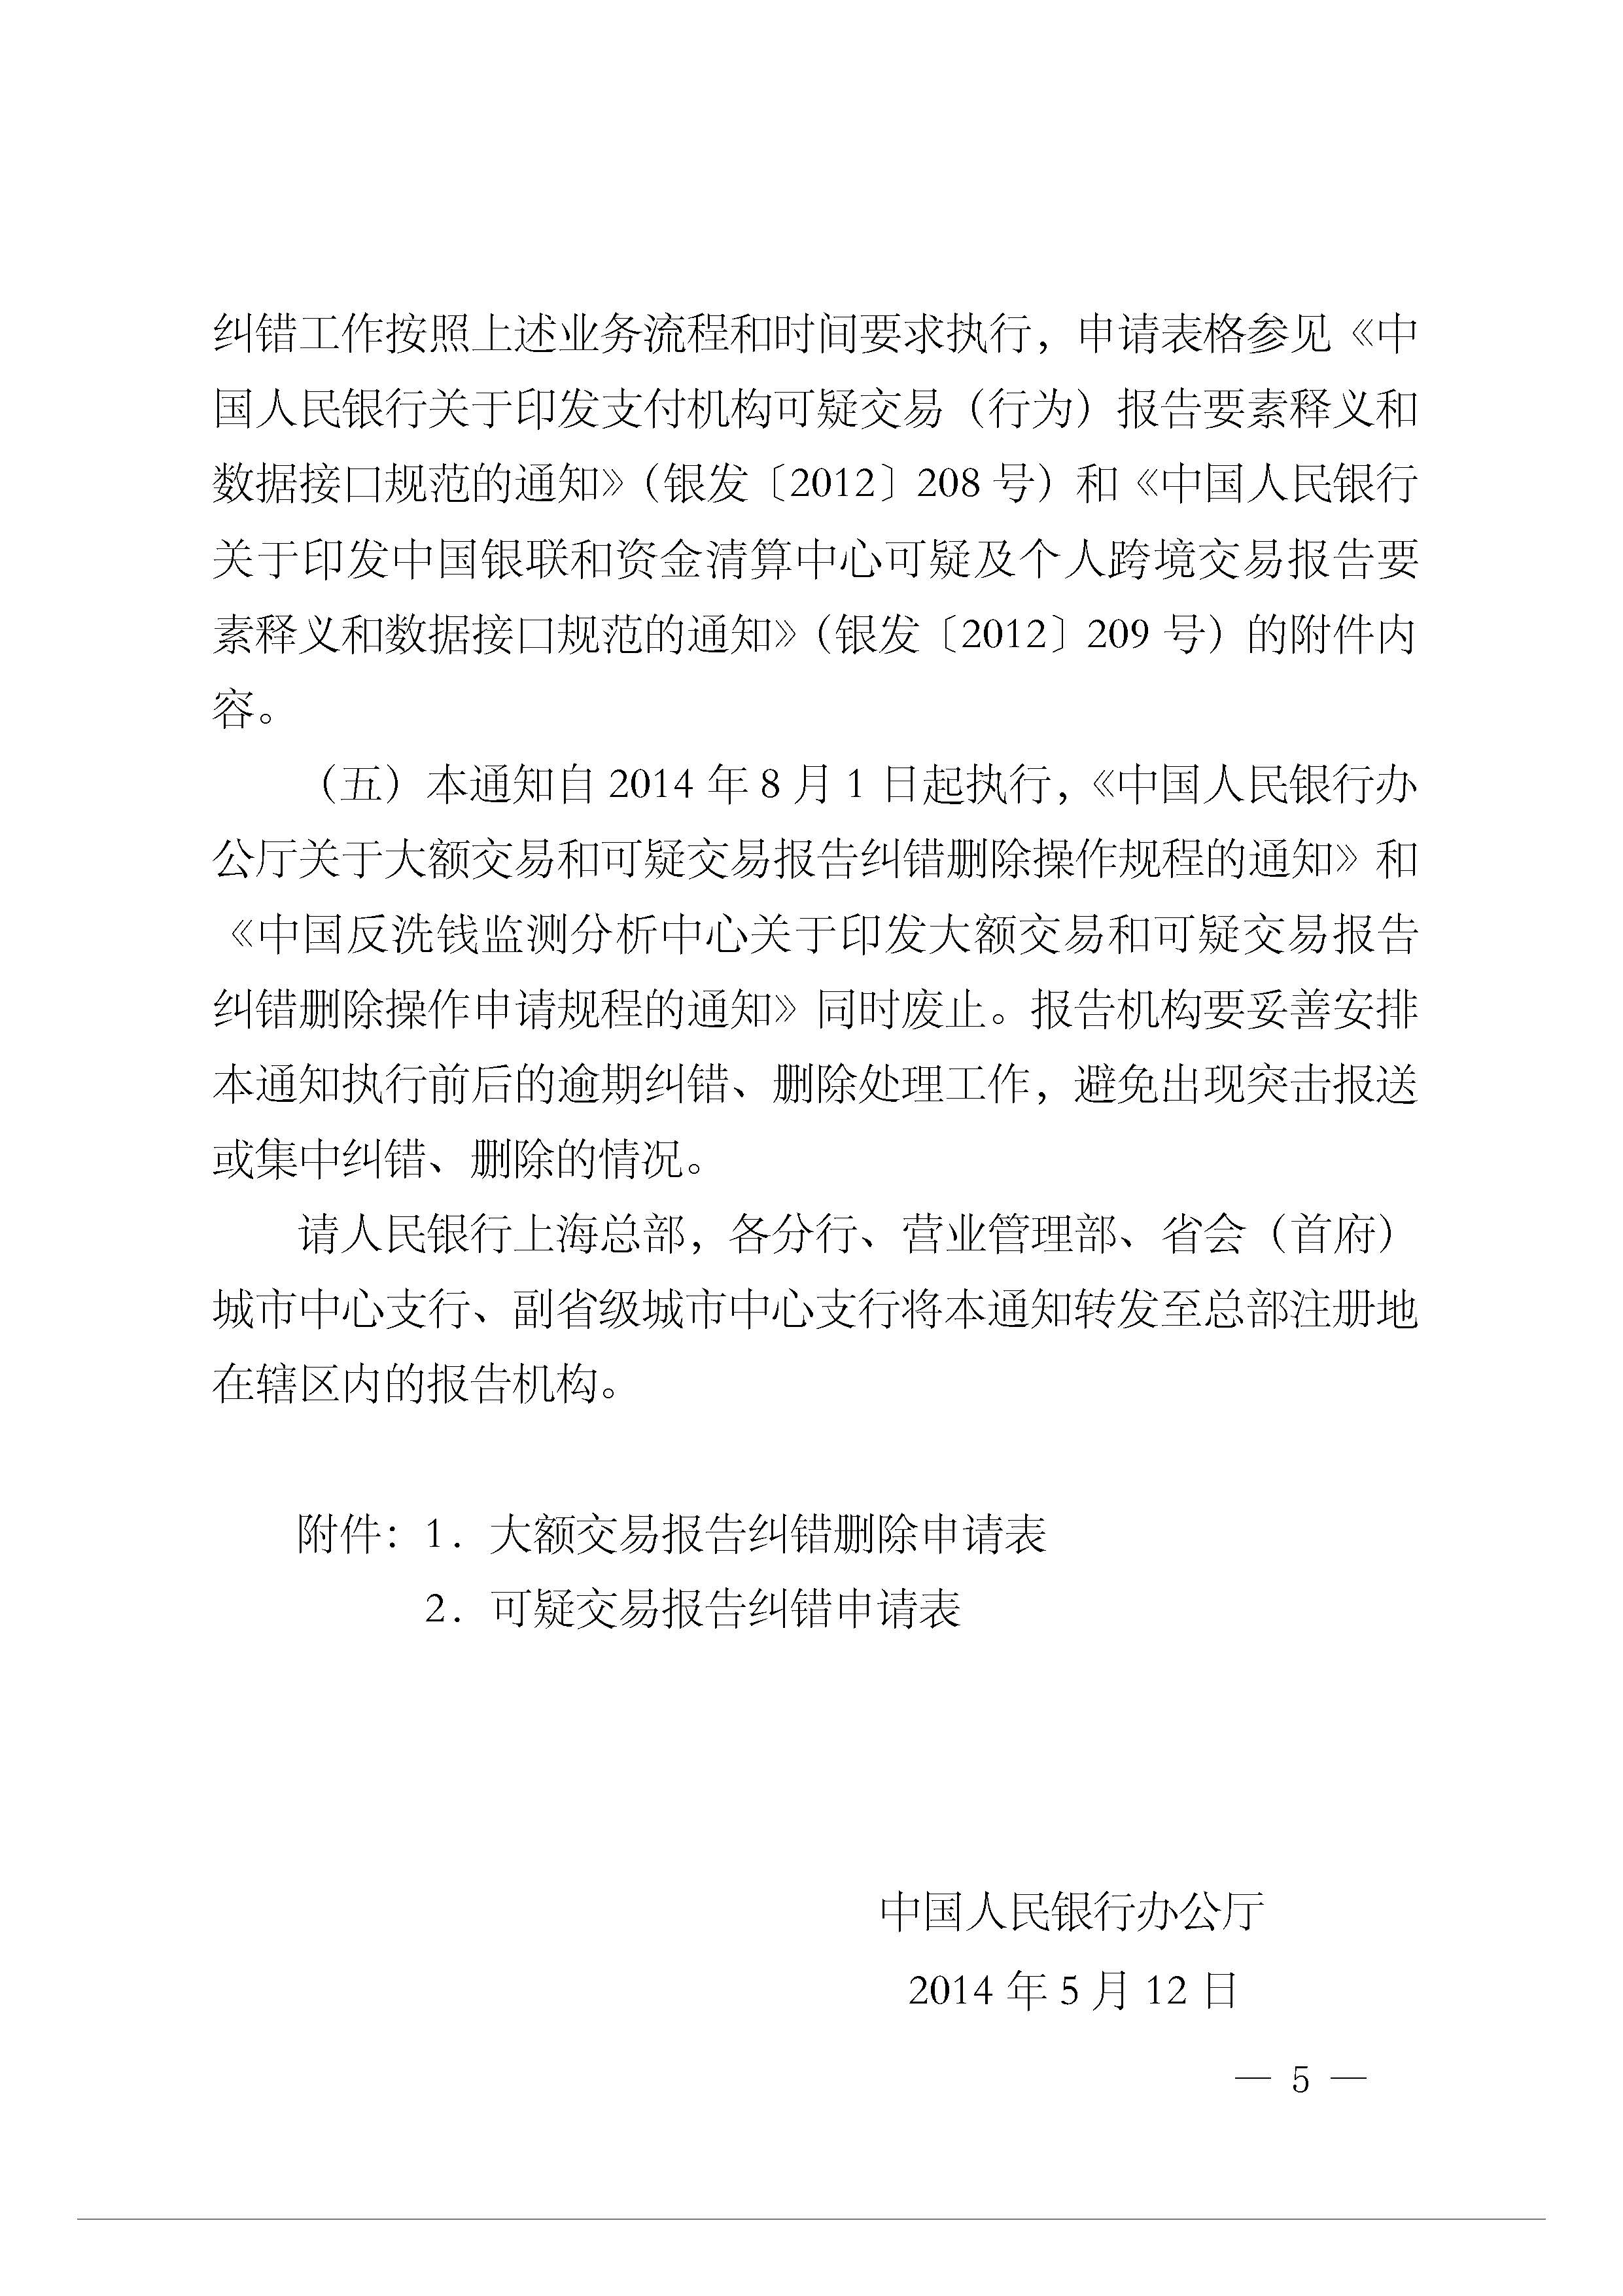 银办发[2014]104号-中国人民银行办公厅关于进一步规范大额交易和可疑交易报告纠错删除.jpg